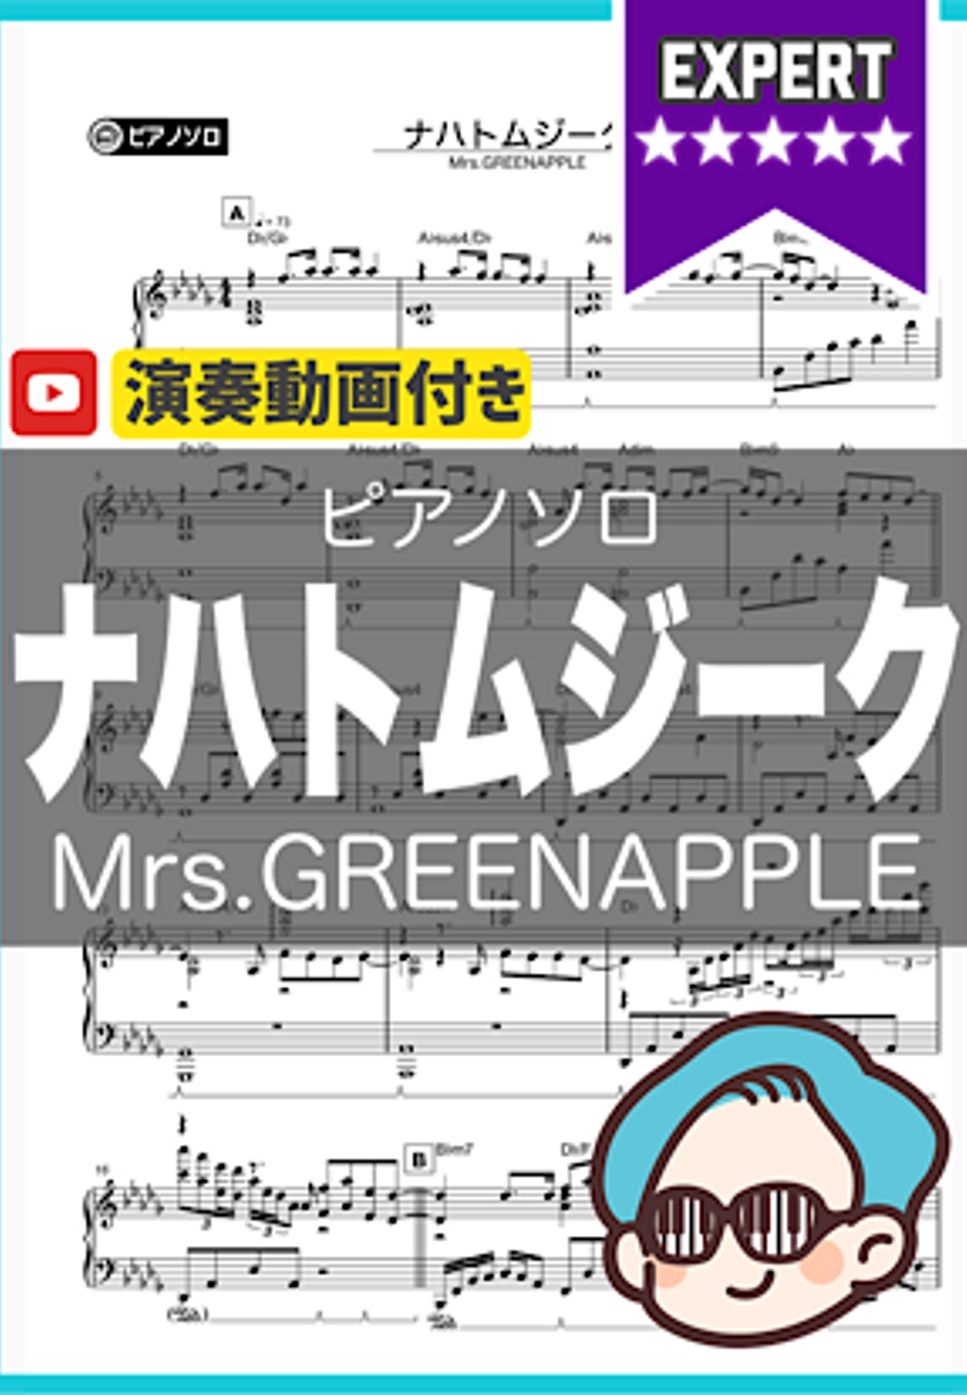 Mrs.GREENAPPLE - ナハトムジーク by シータピアノ